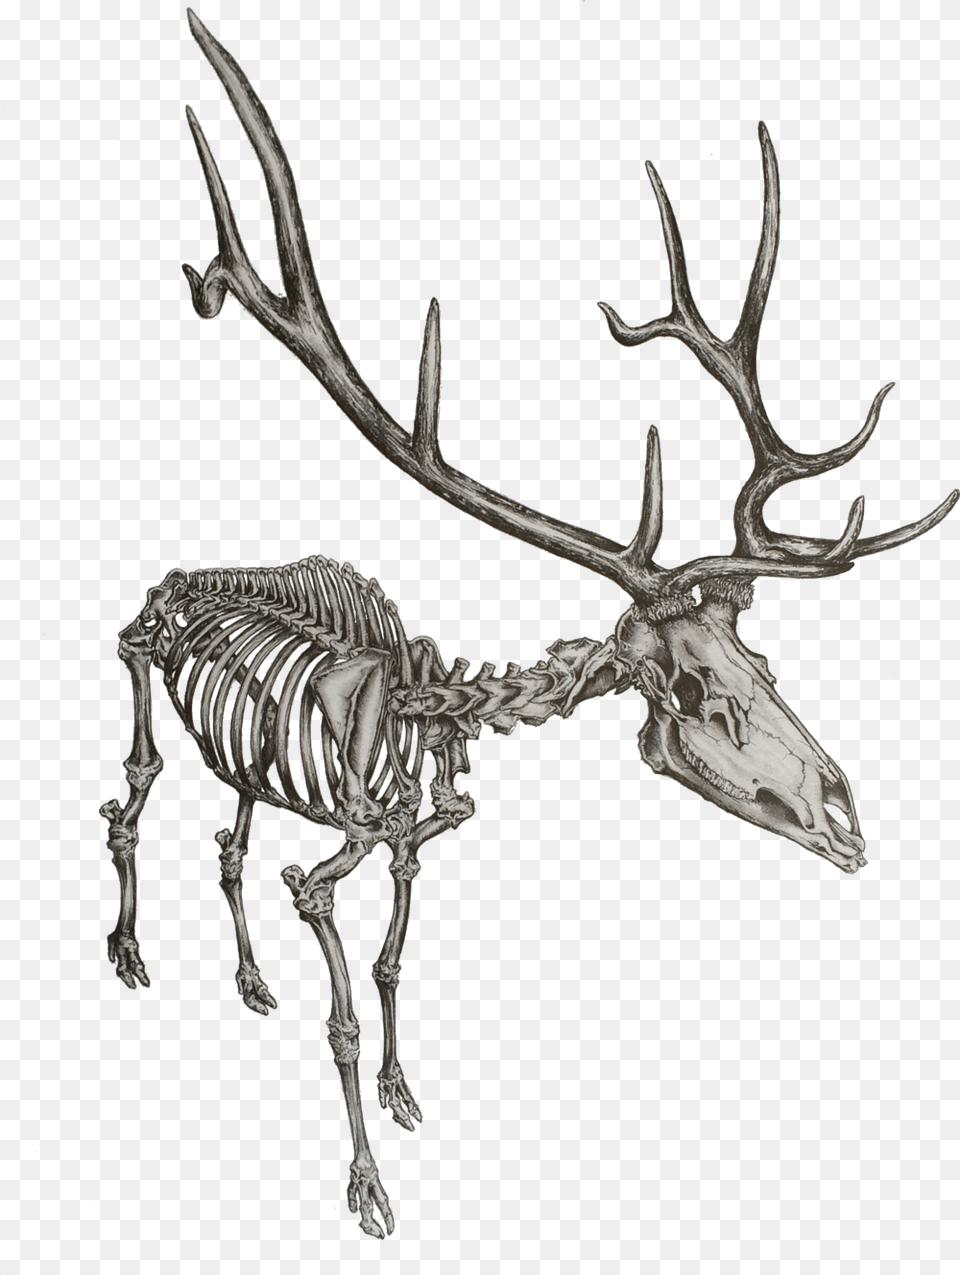 Elk Drawing Skeleton Skeleton Of An Elk, Antler, Animal, Antelope, Mammal Free Transparent Png